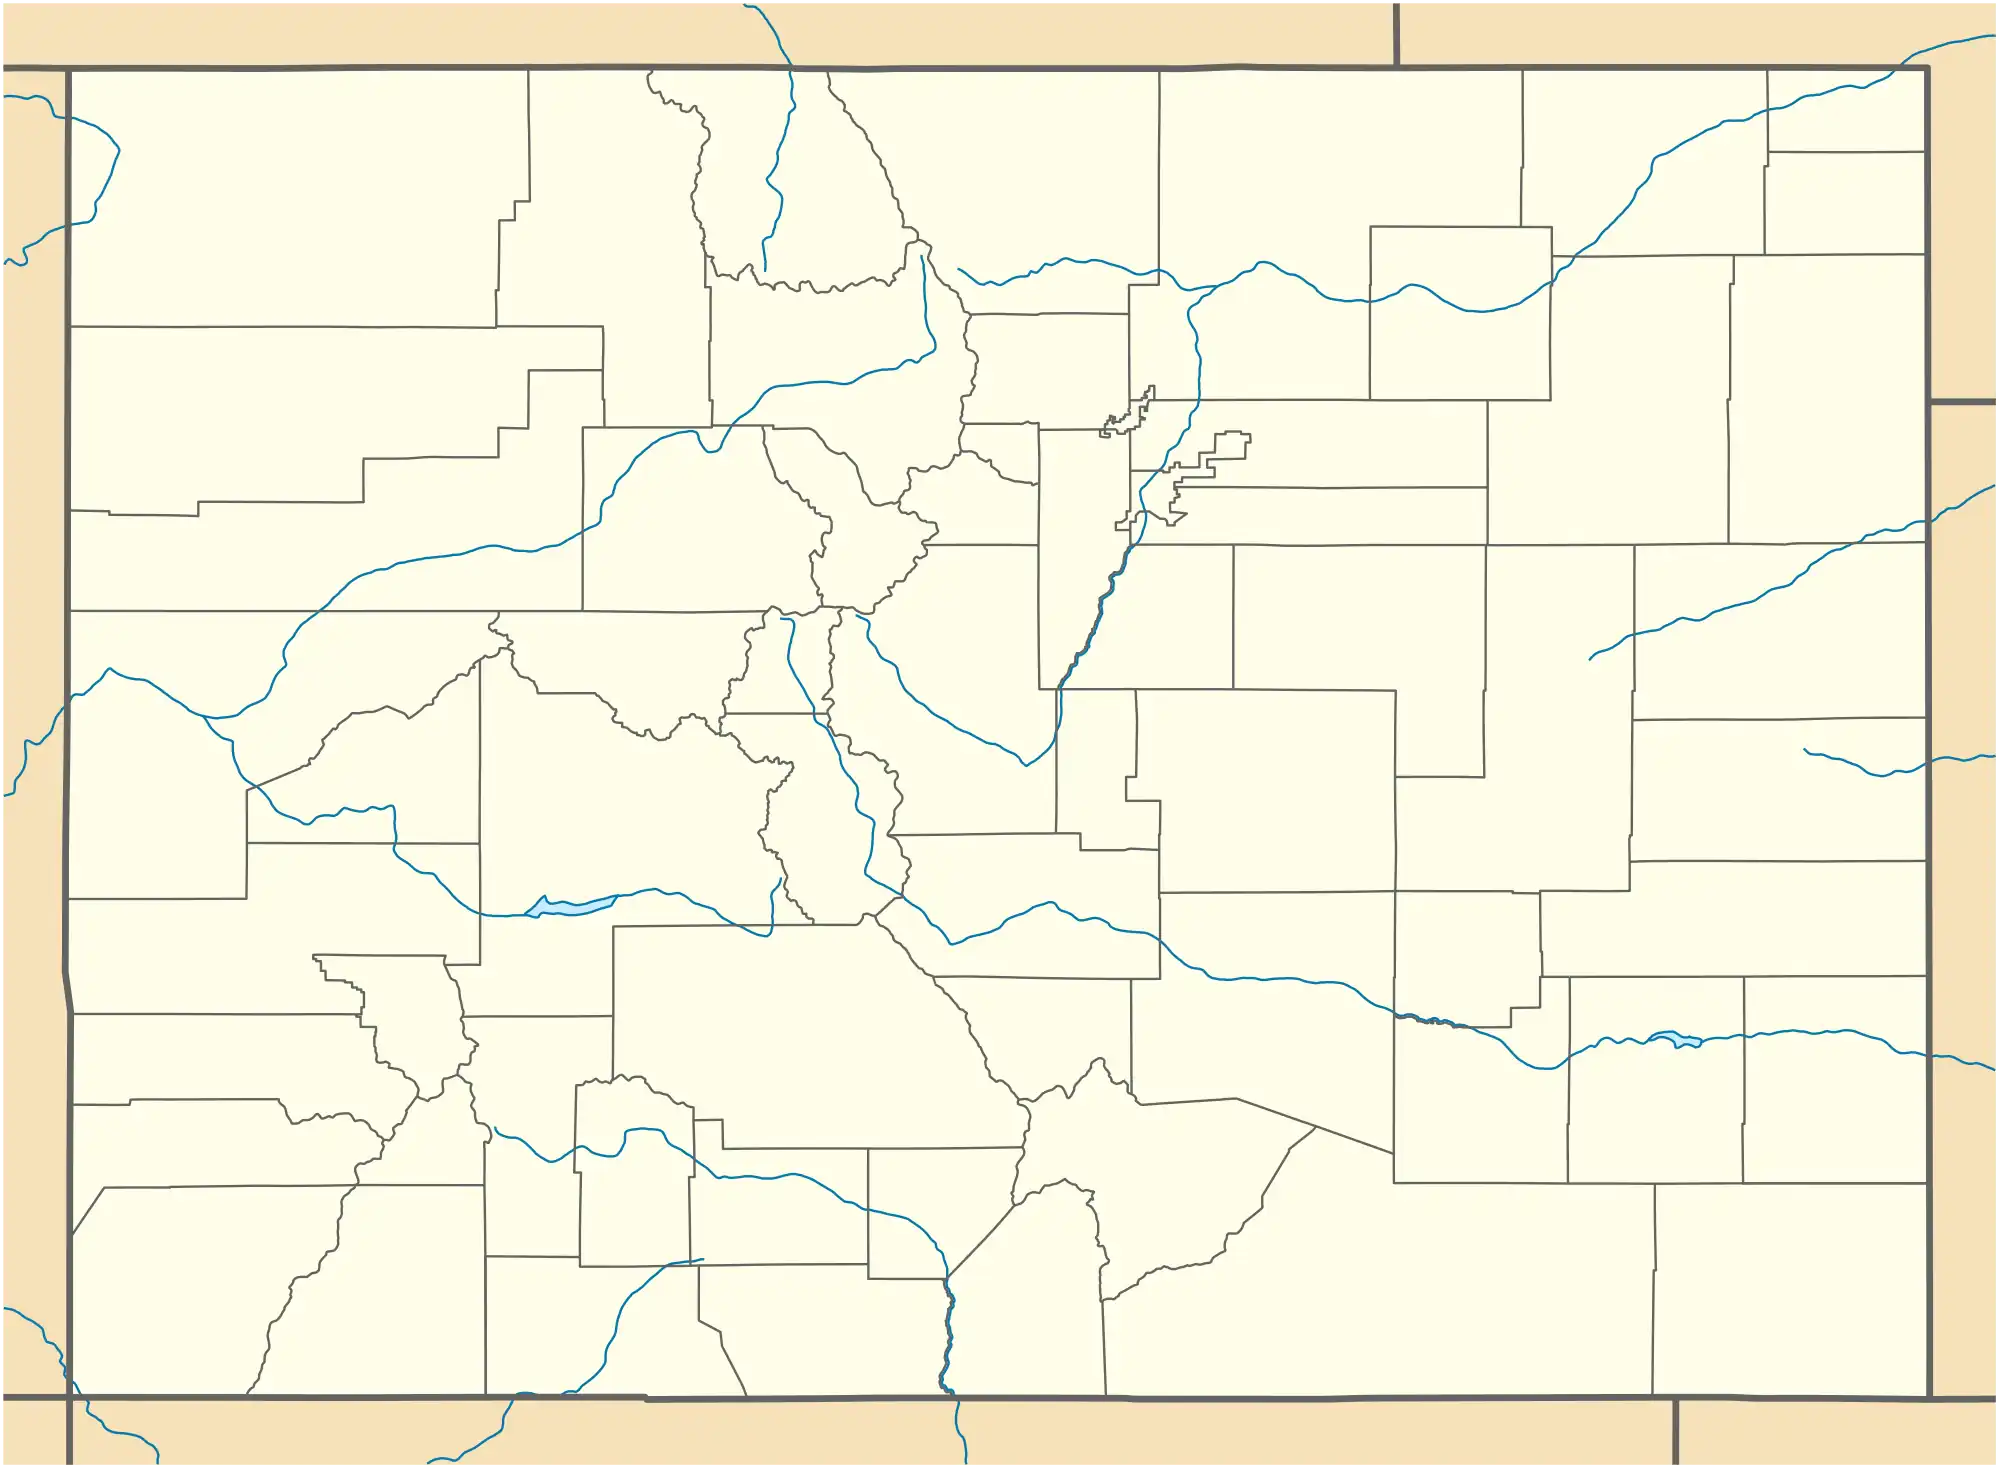 University of Colorado Boulder is located in Colorado